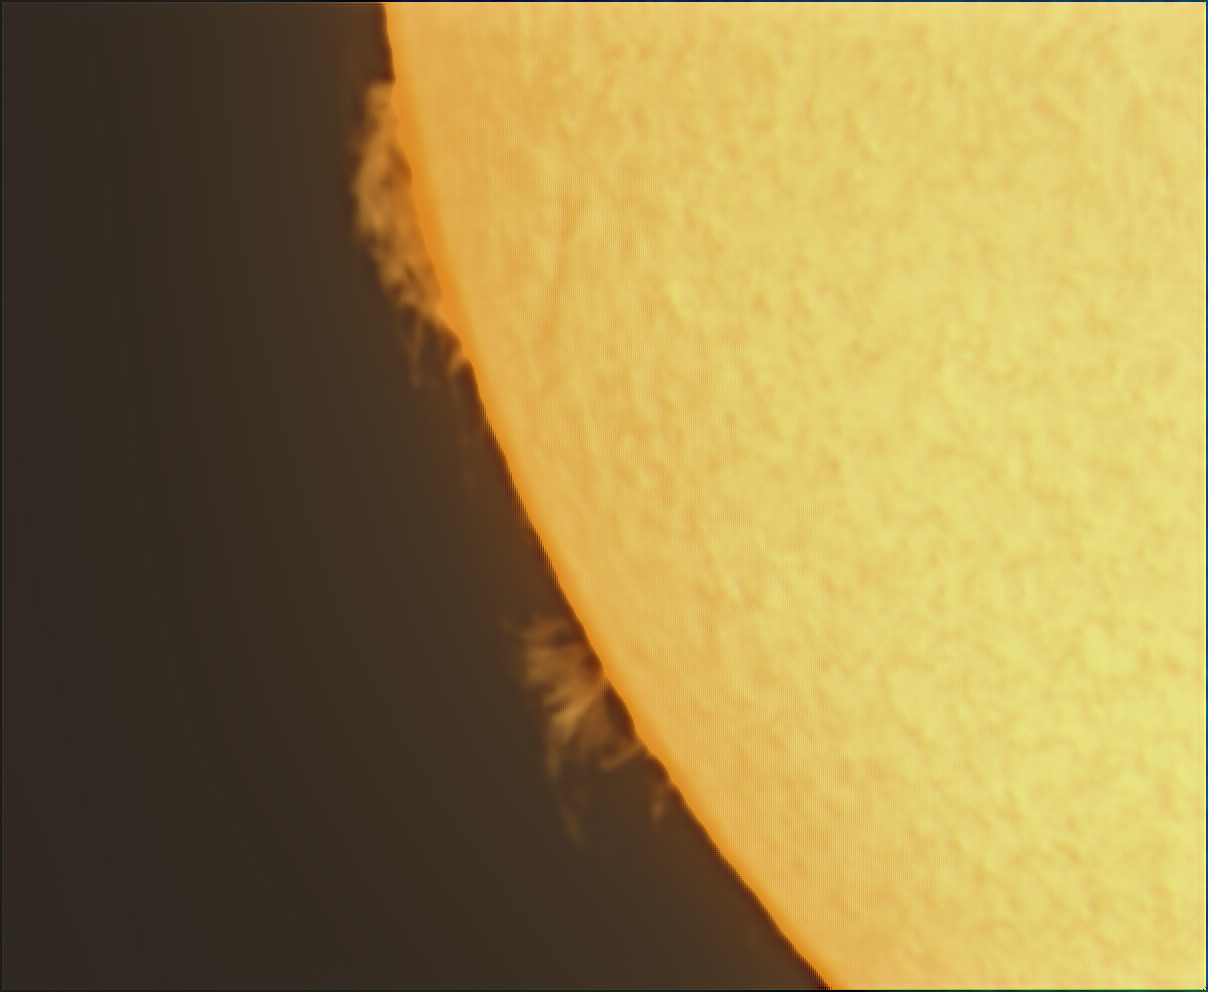 Sonne H-alpha mit Massenauswurf